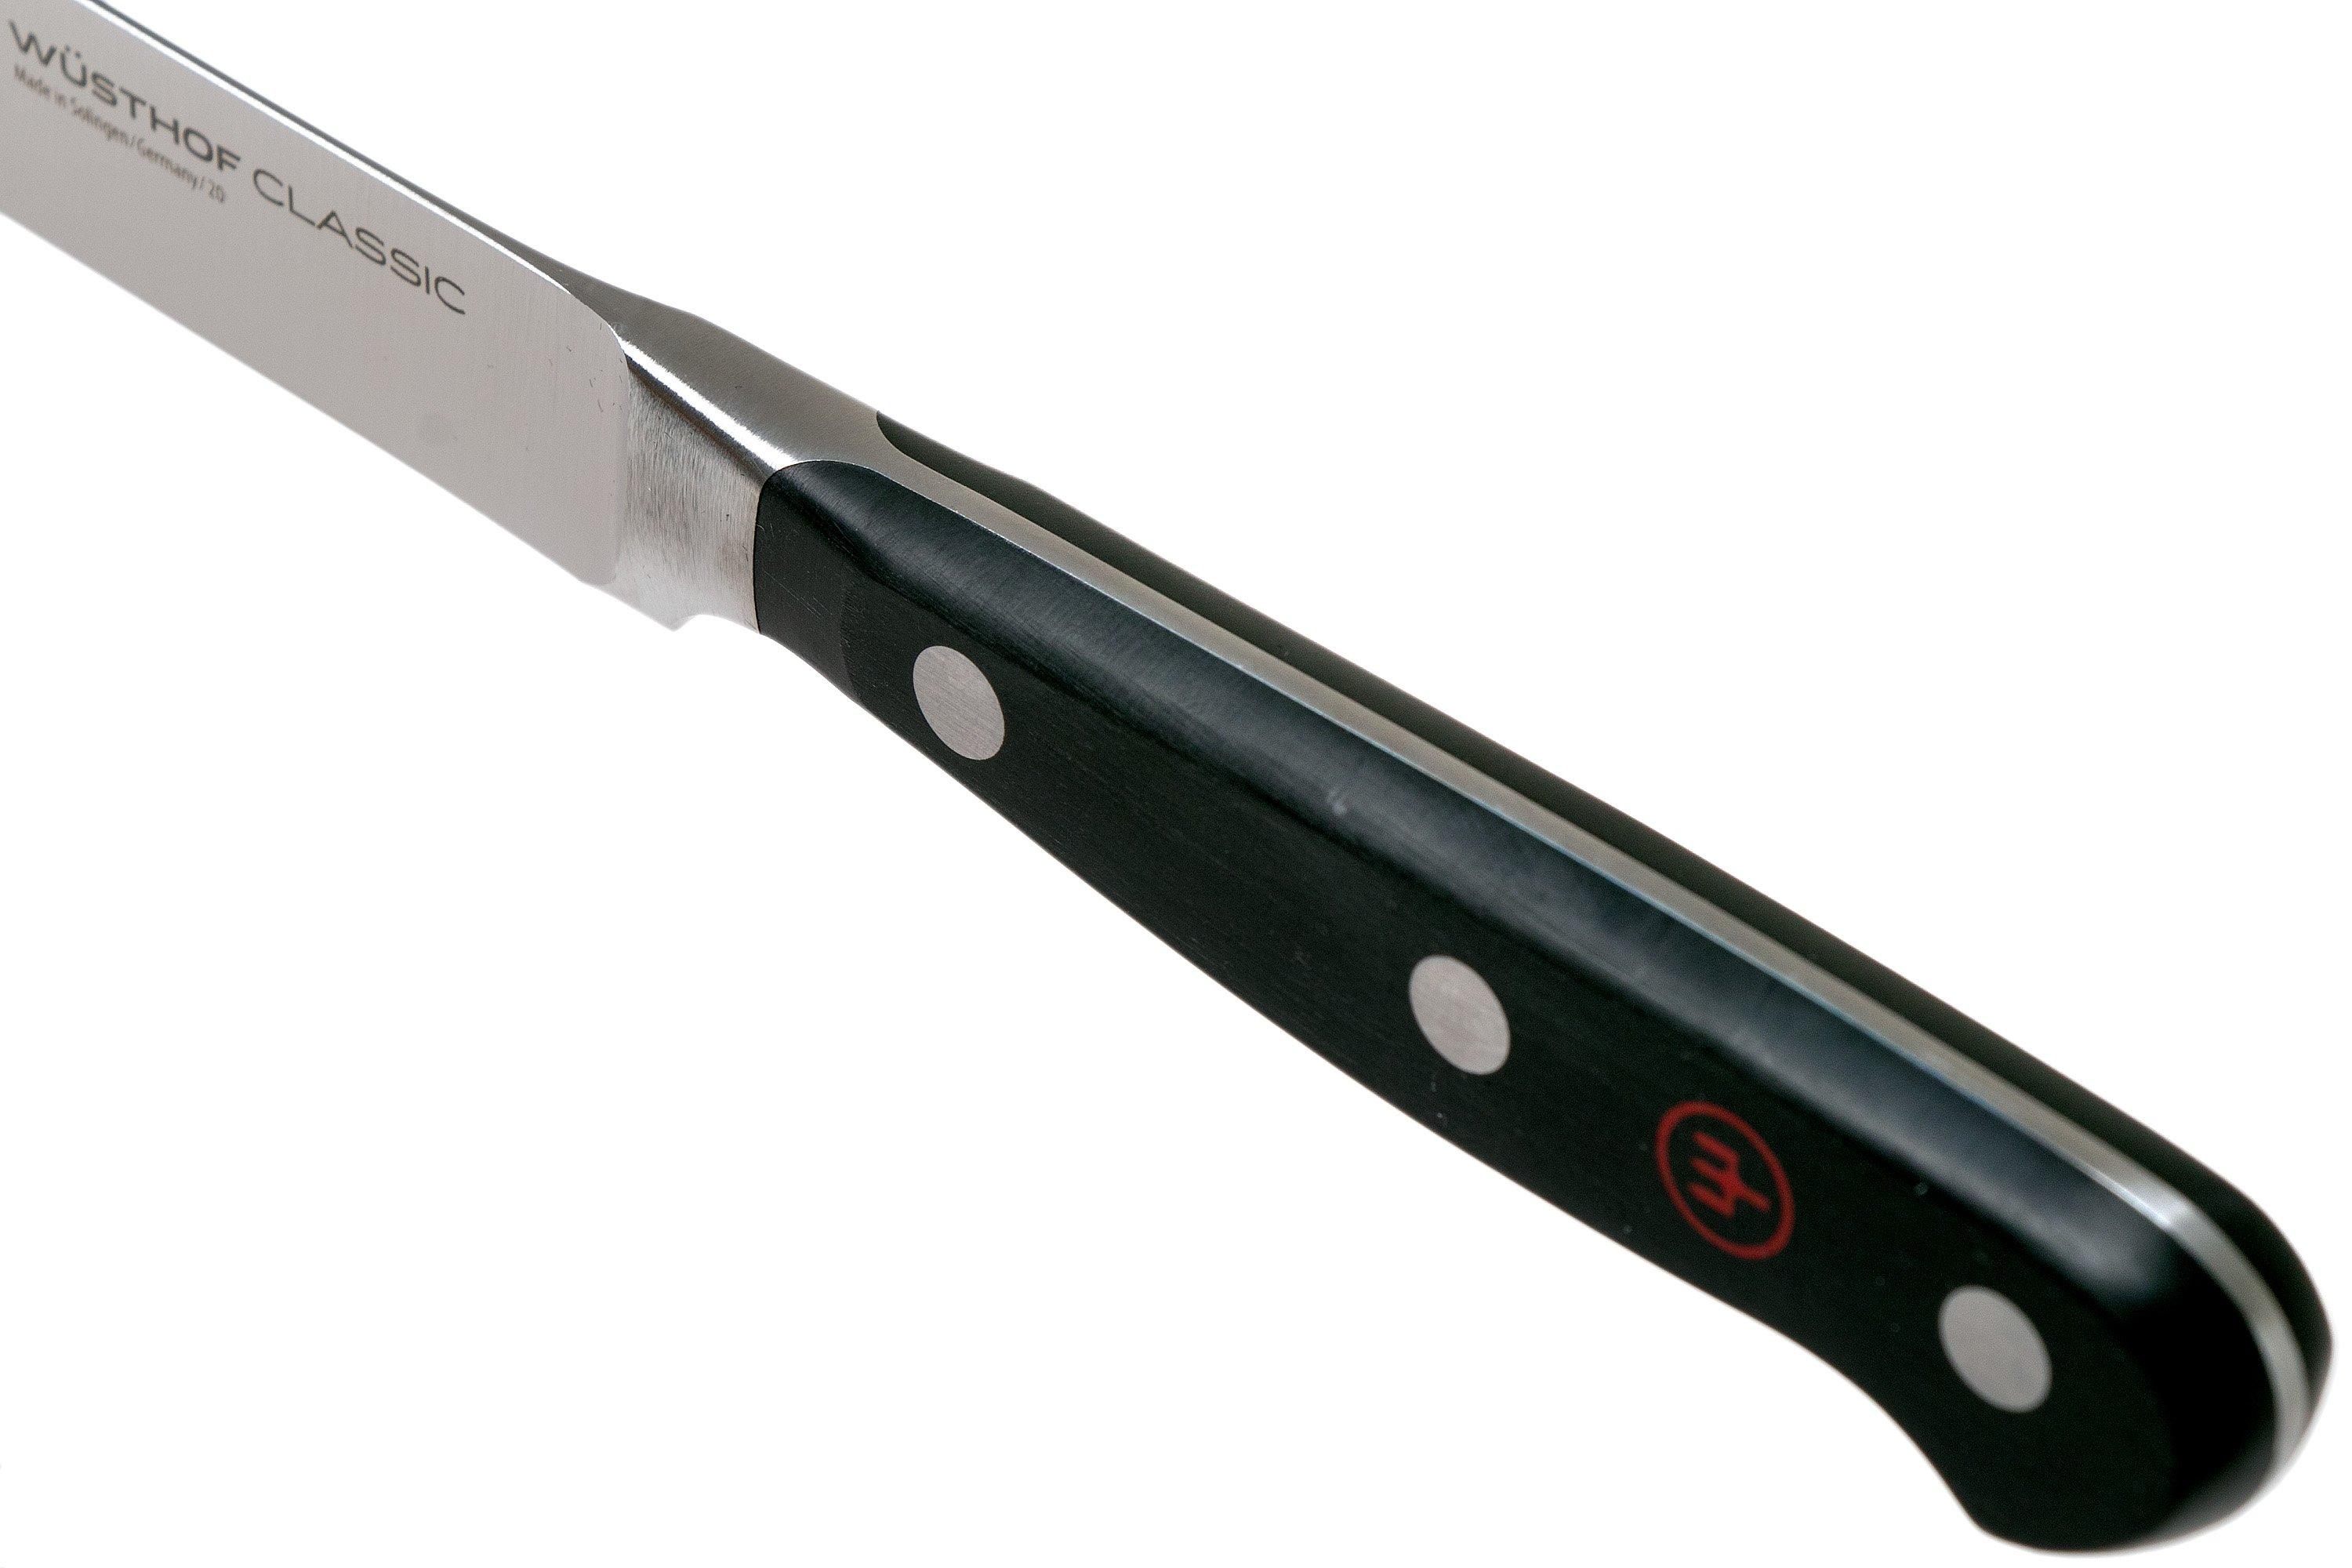 Wusthof Germany - Classic - Coltello Sfilettare Pesce Flessibile da 20cm. -  1040102920 - coltello da cucina